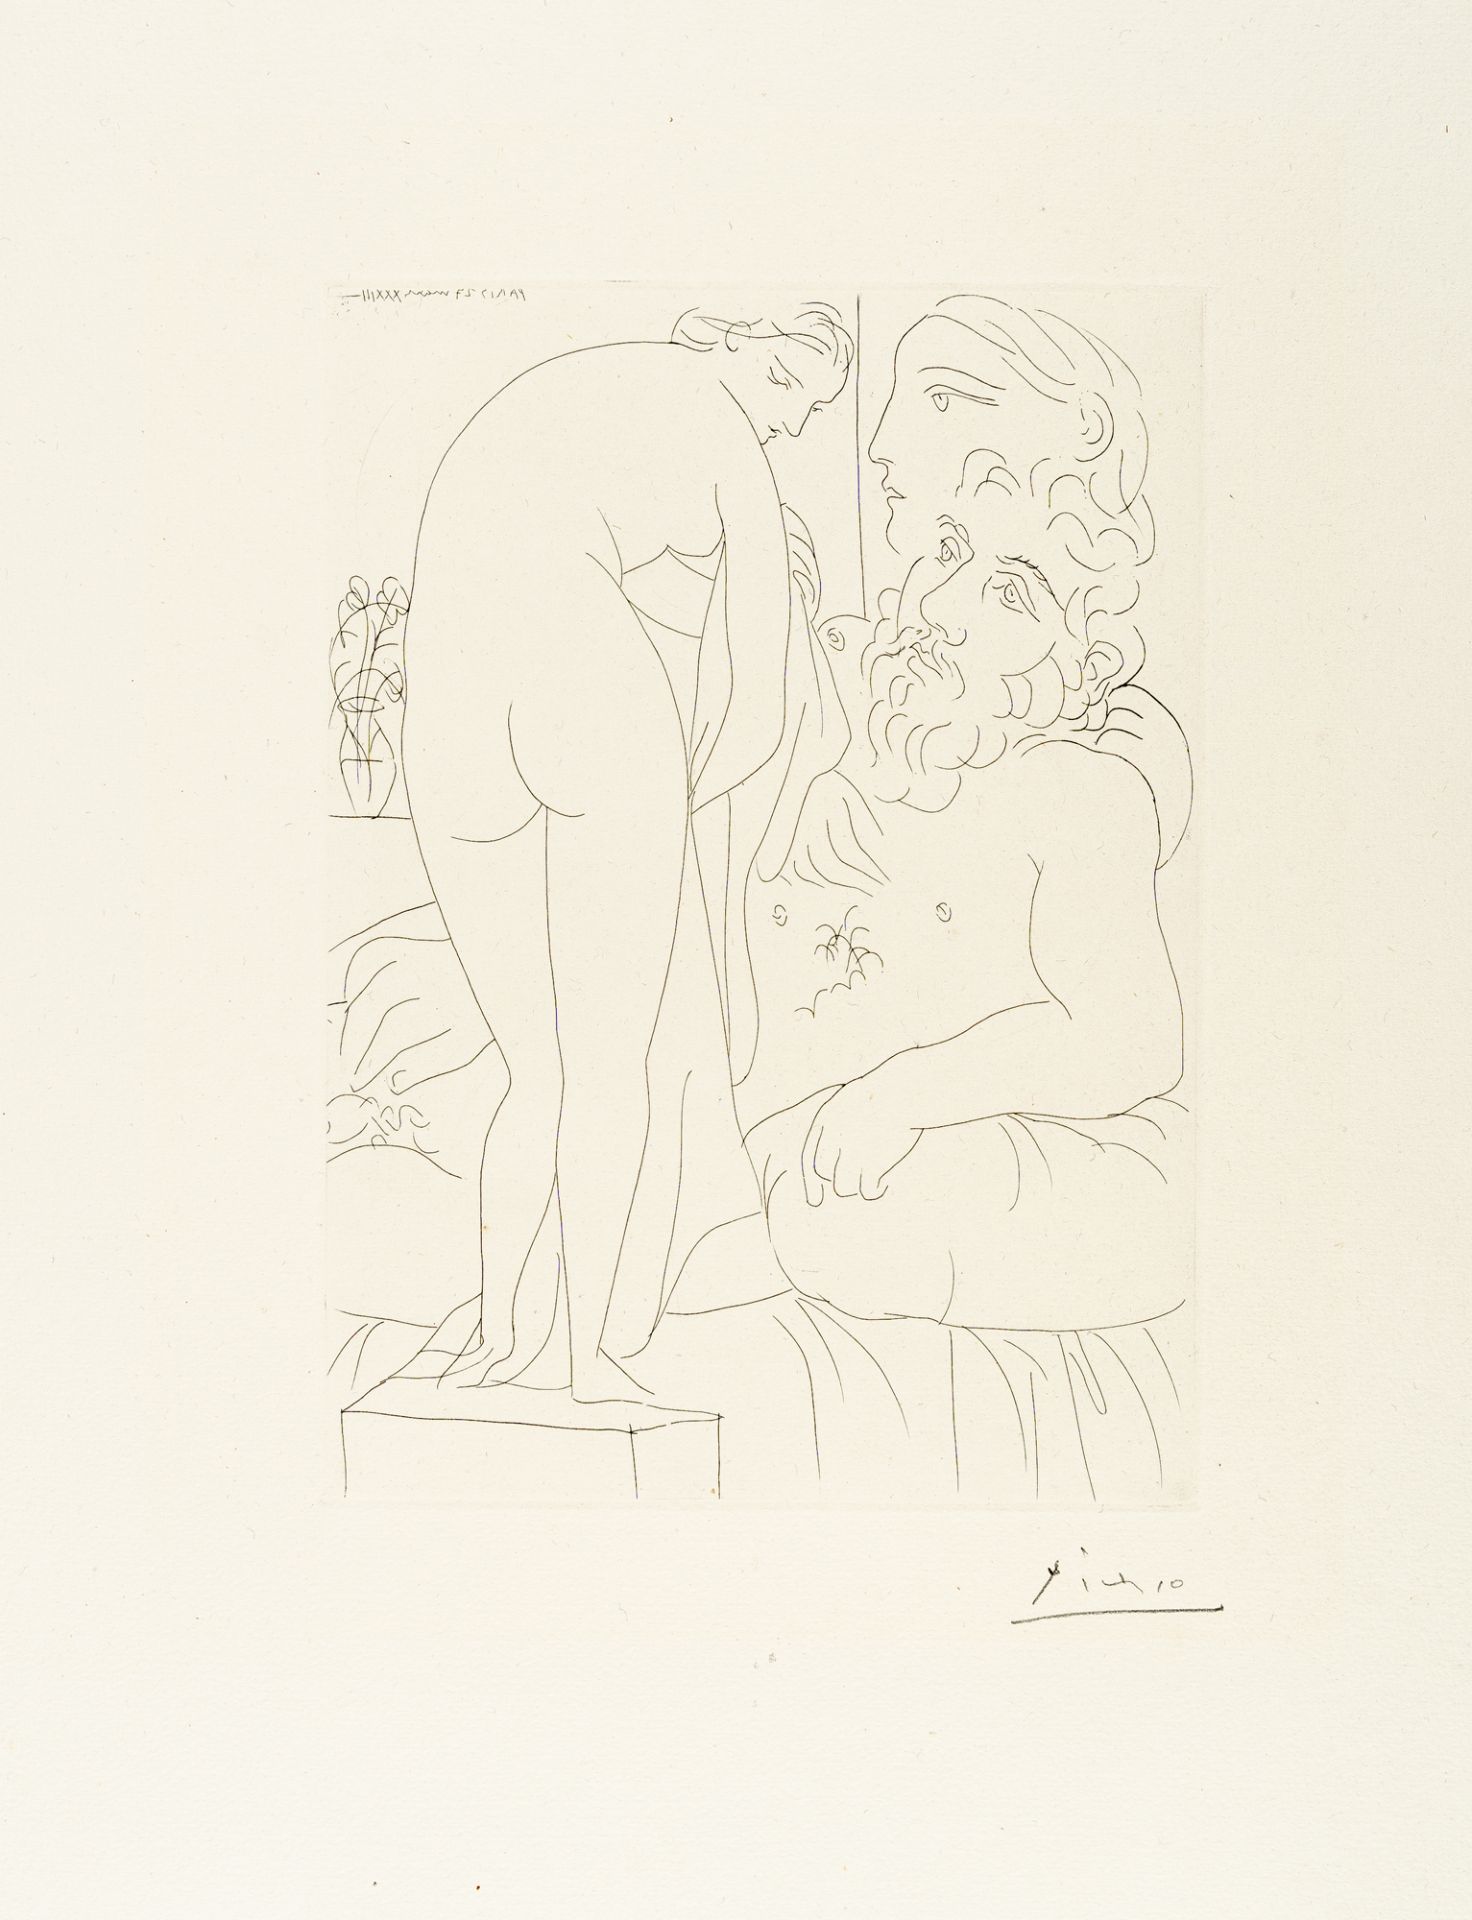 Pablo Picasso, Sculpteur au repos avec Marie-Thérèse et sa représentation en Vén.Etching on laid